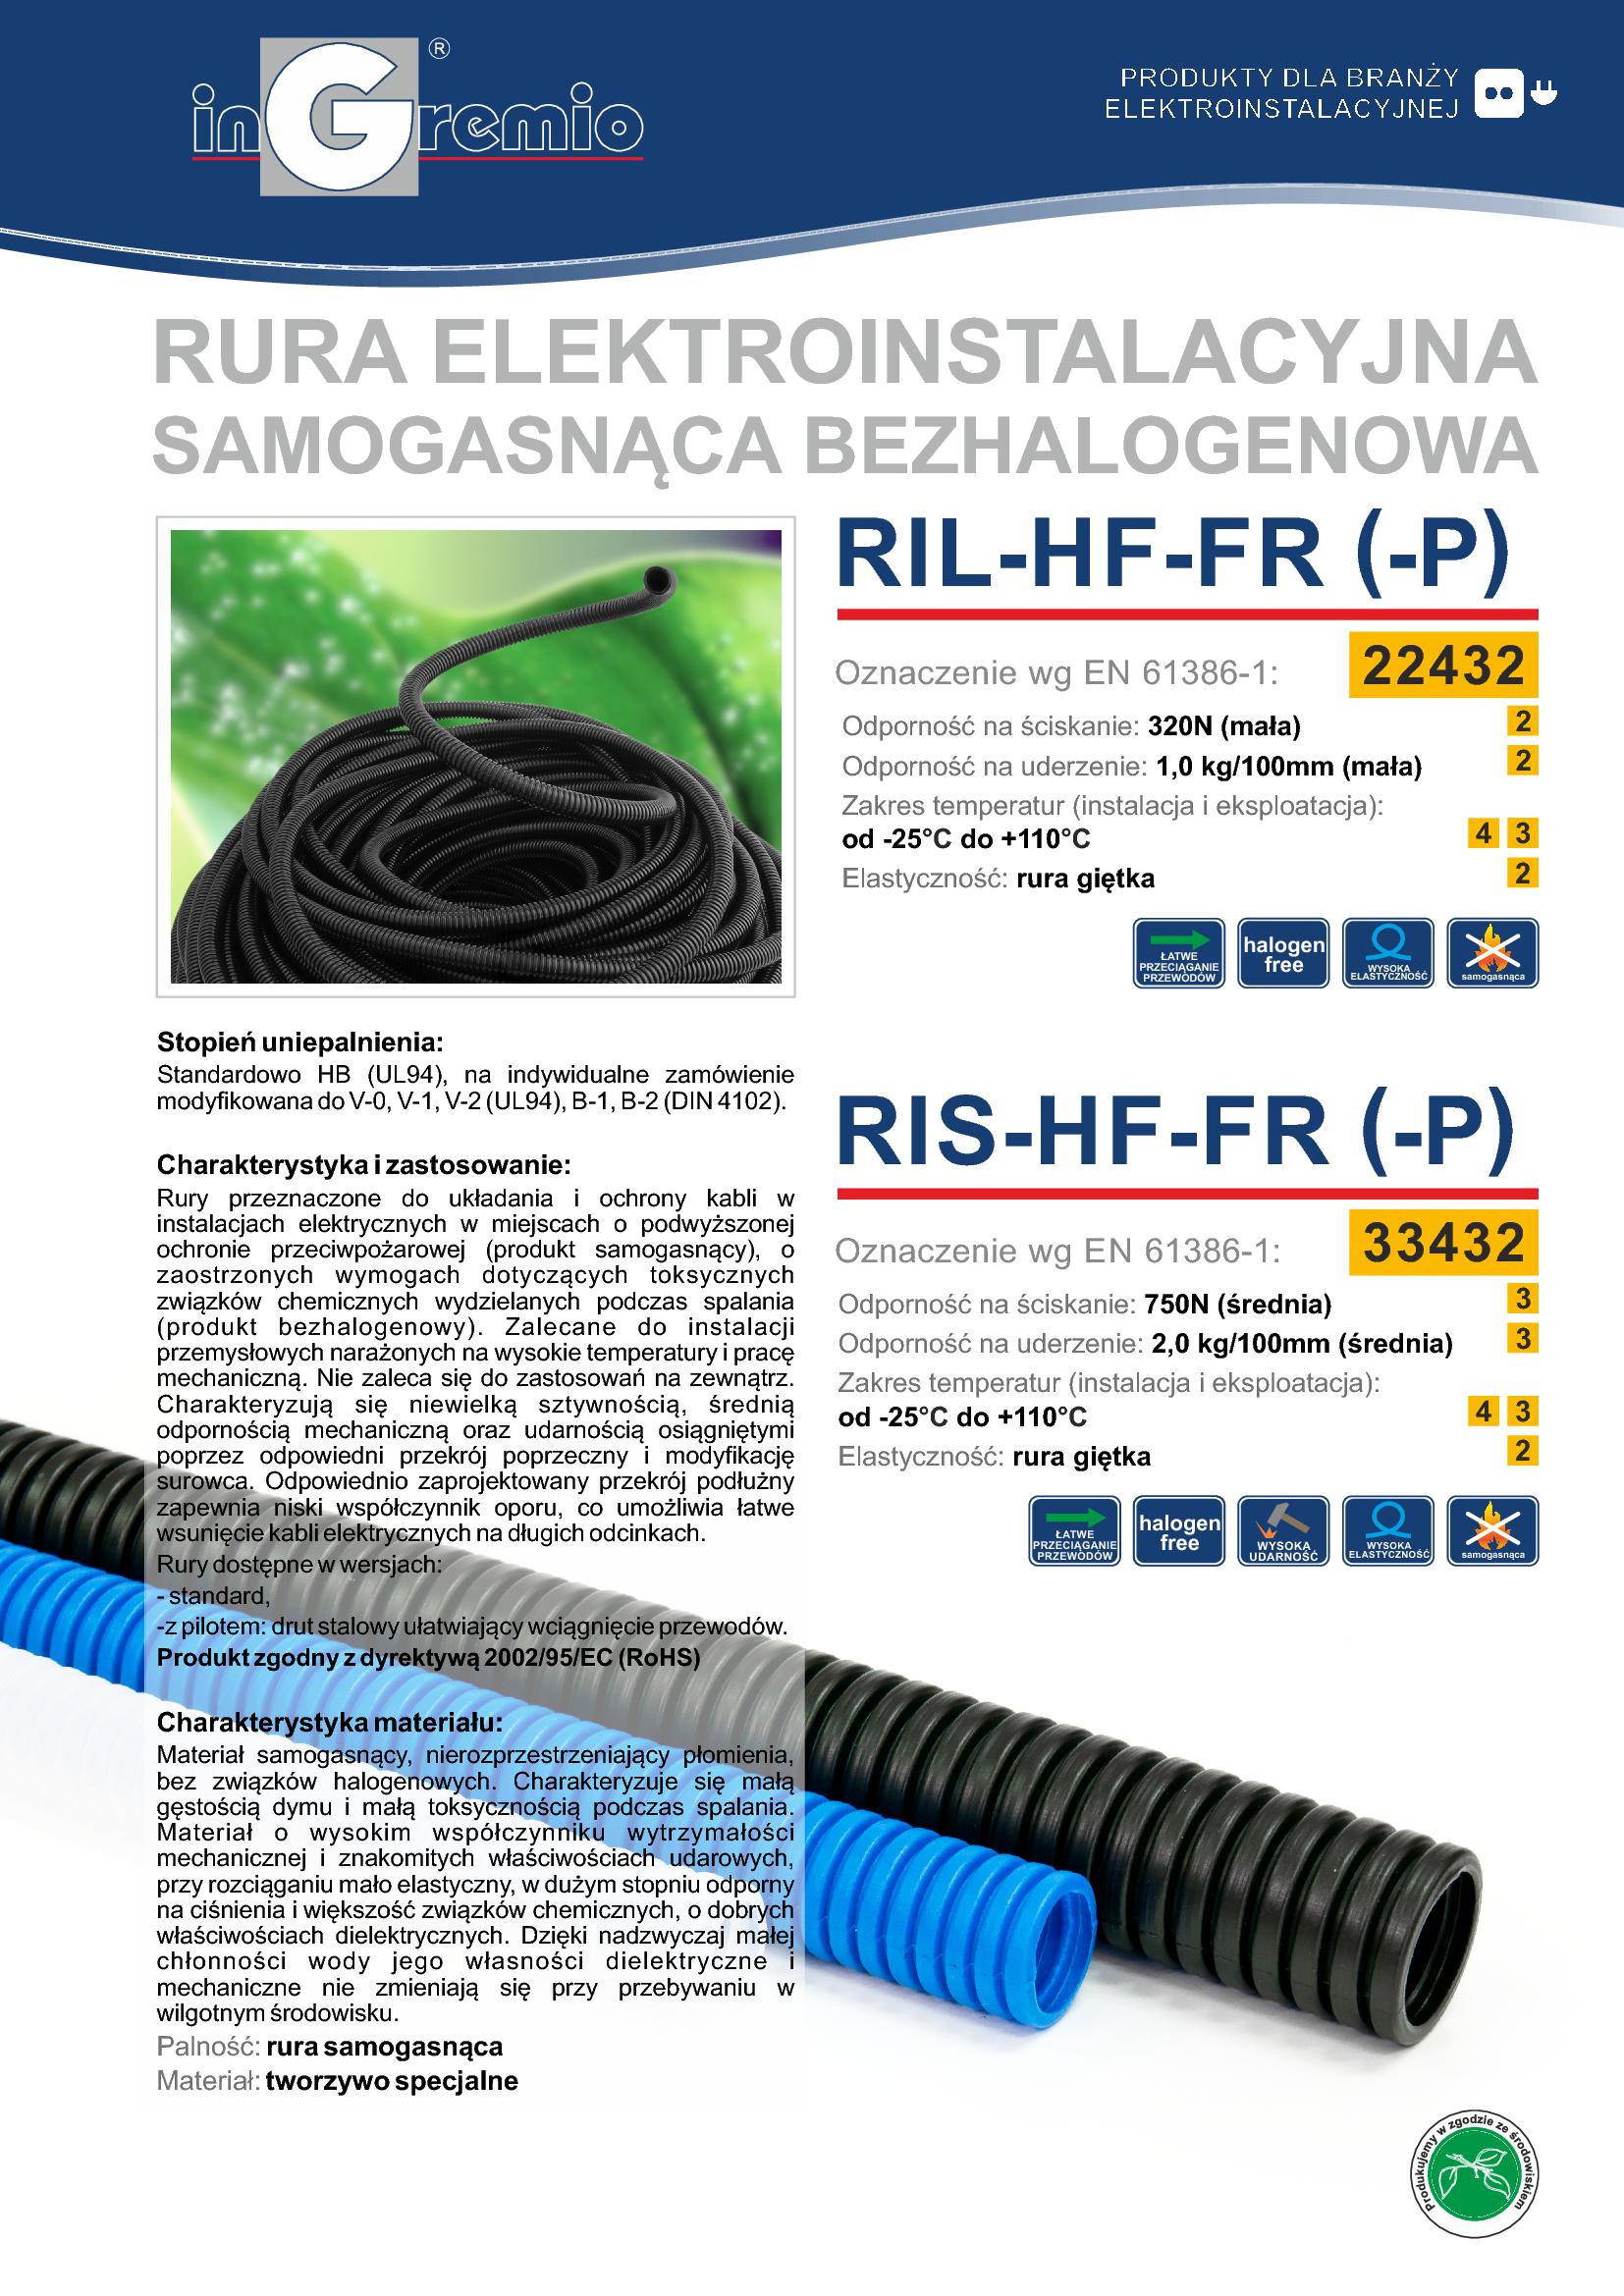 INGR_Catalog_RIL-HF-FR-RIS-HF-FR